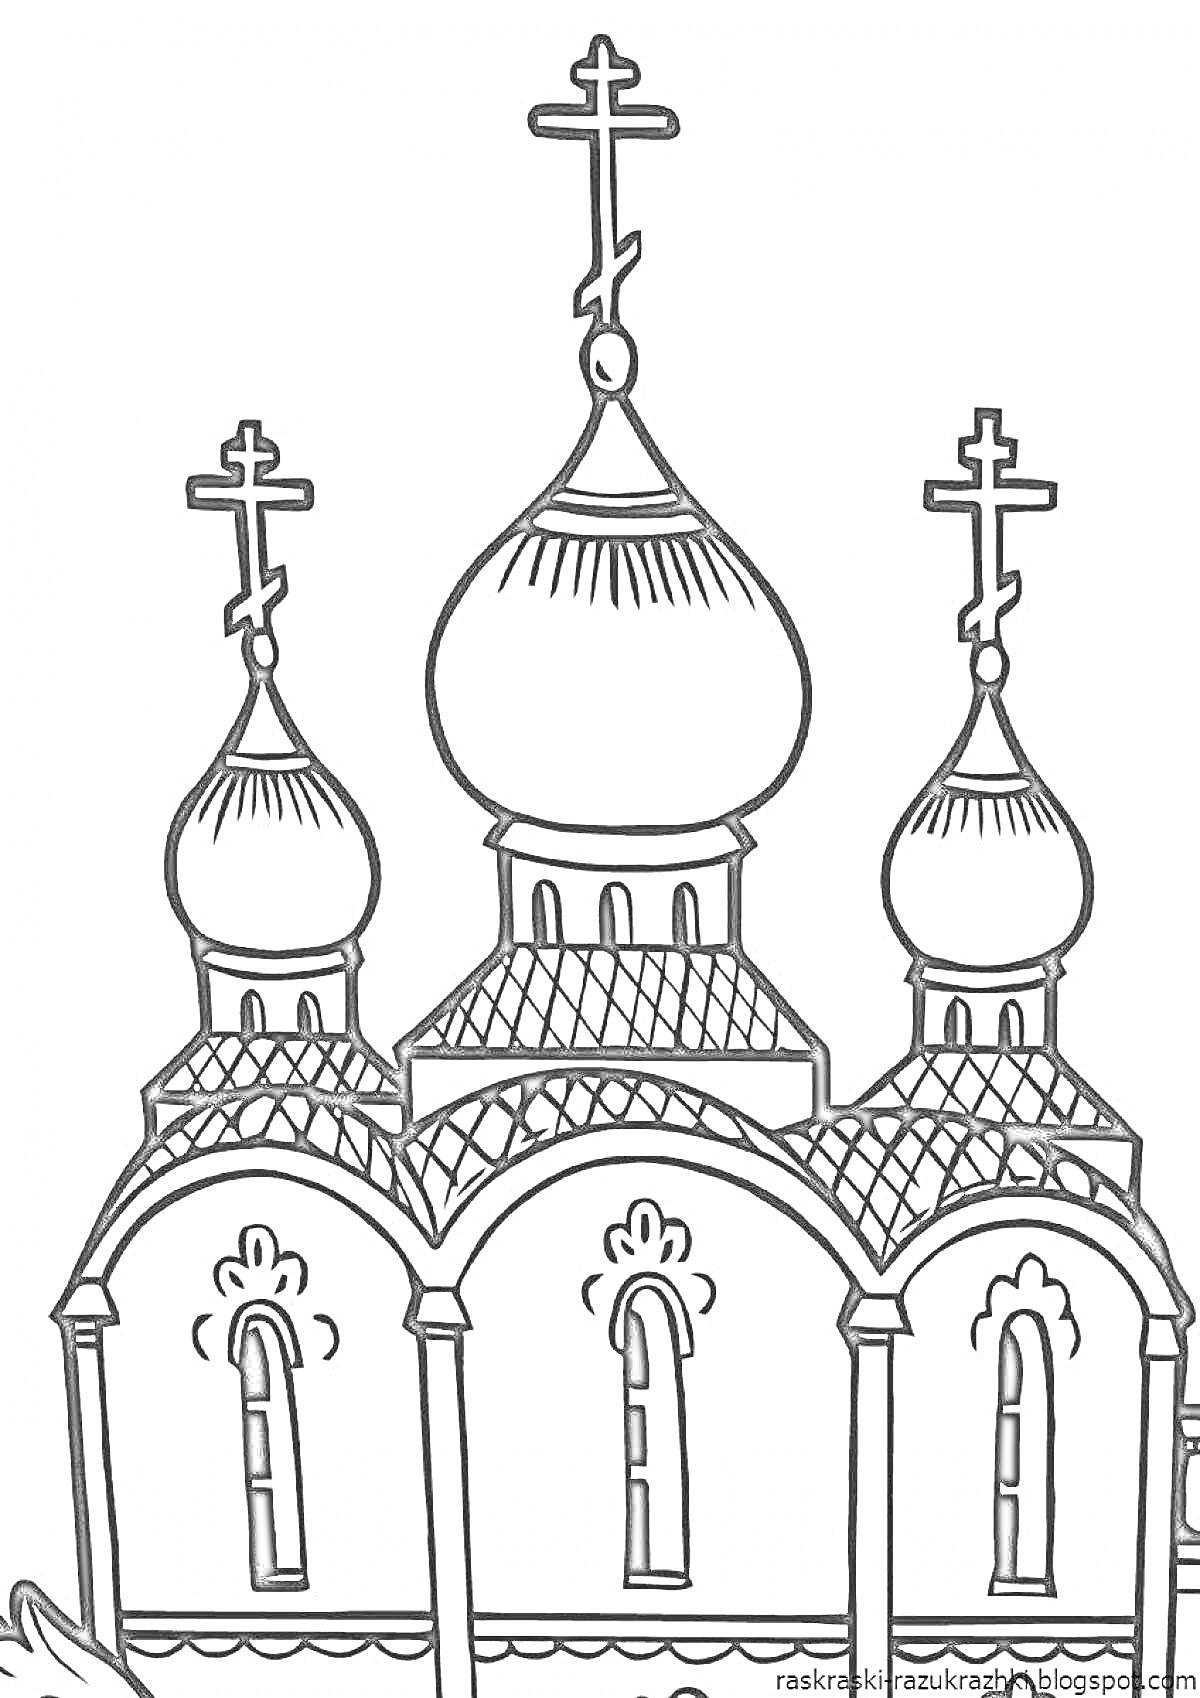 Раскраска Храм с тремя куполами и крестами, арочные окна с узорами